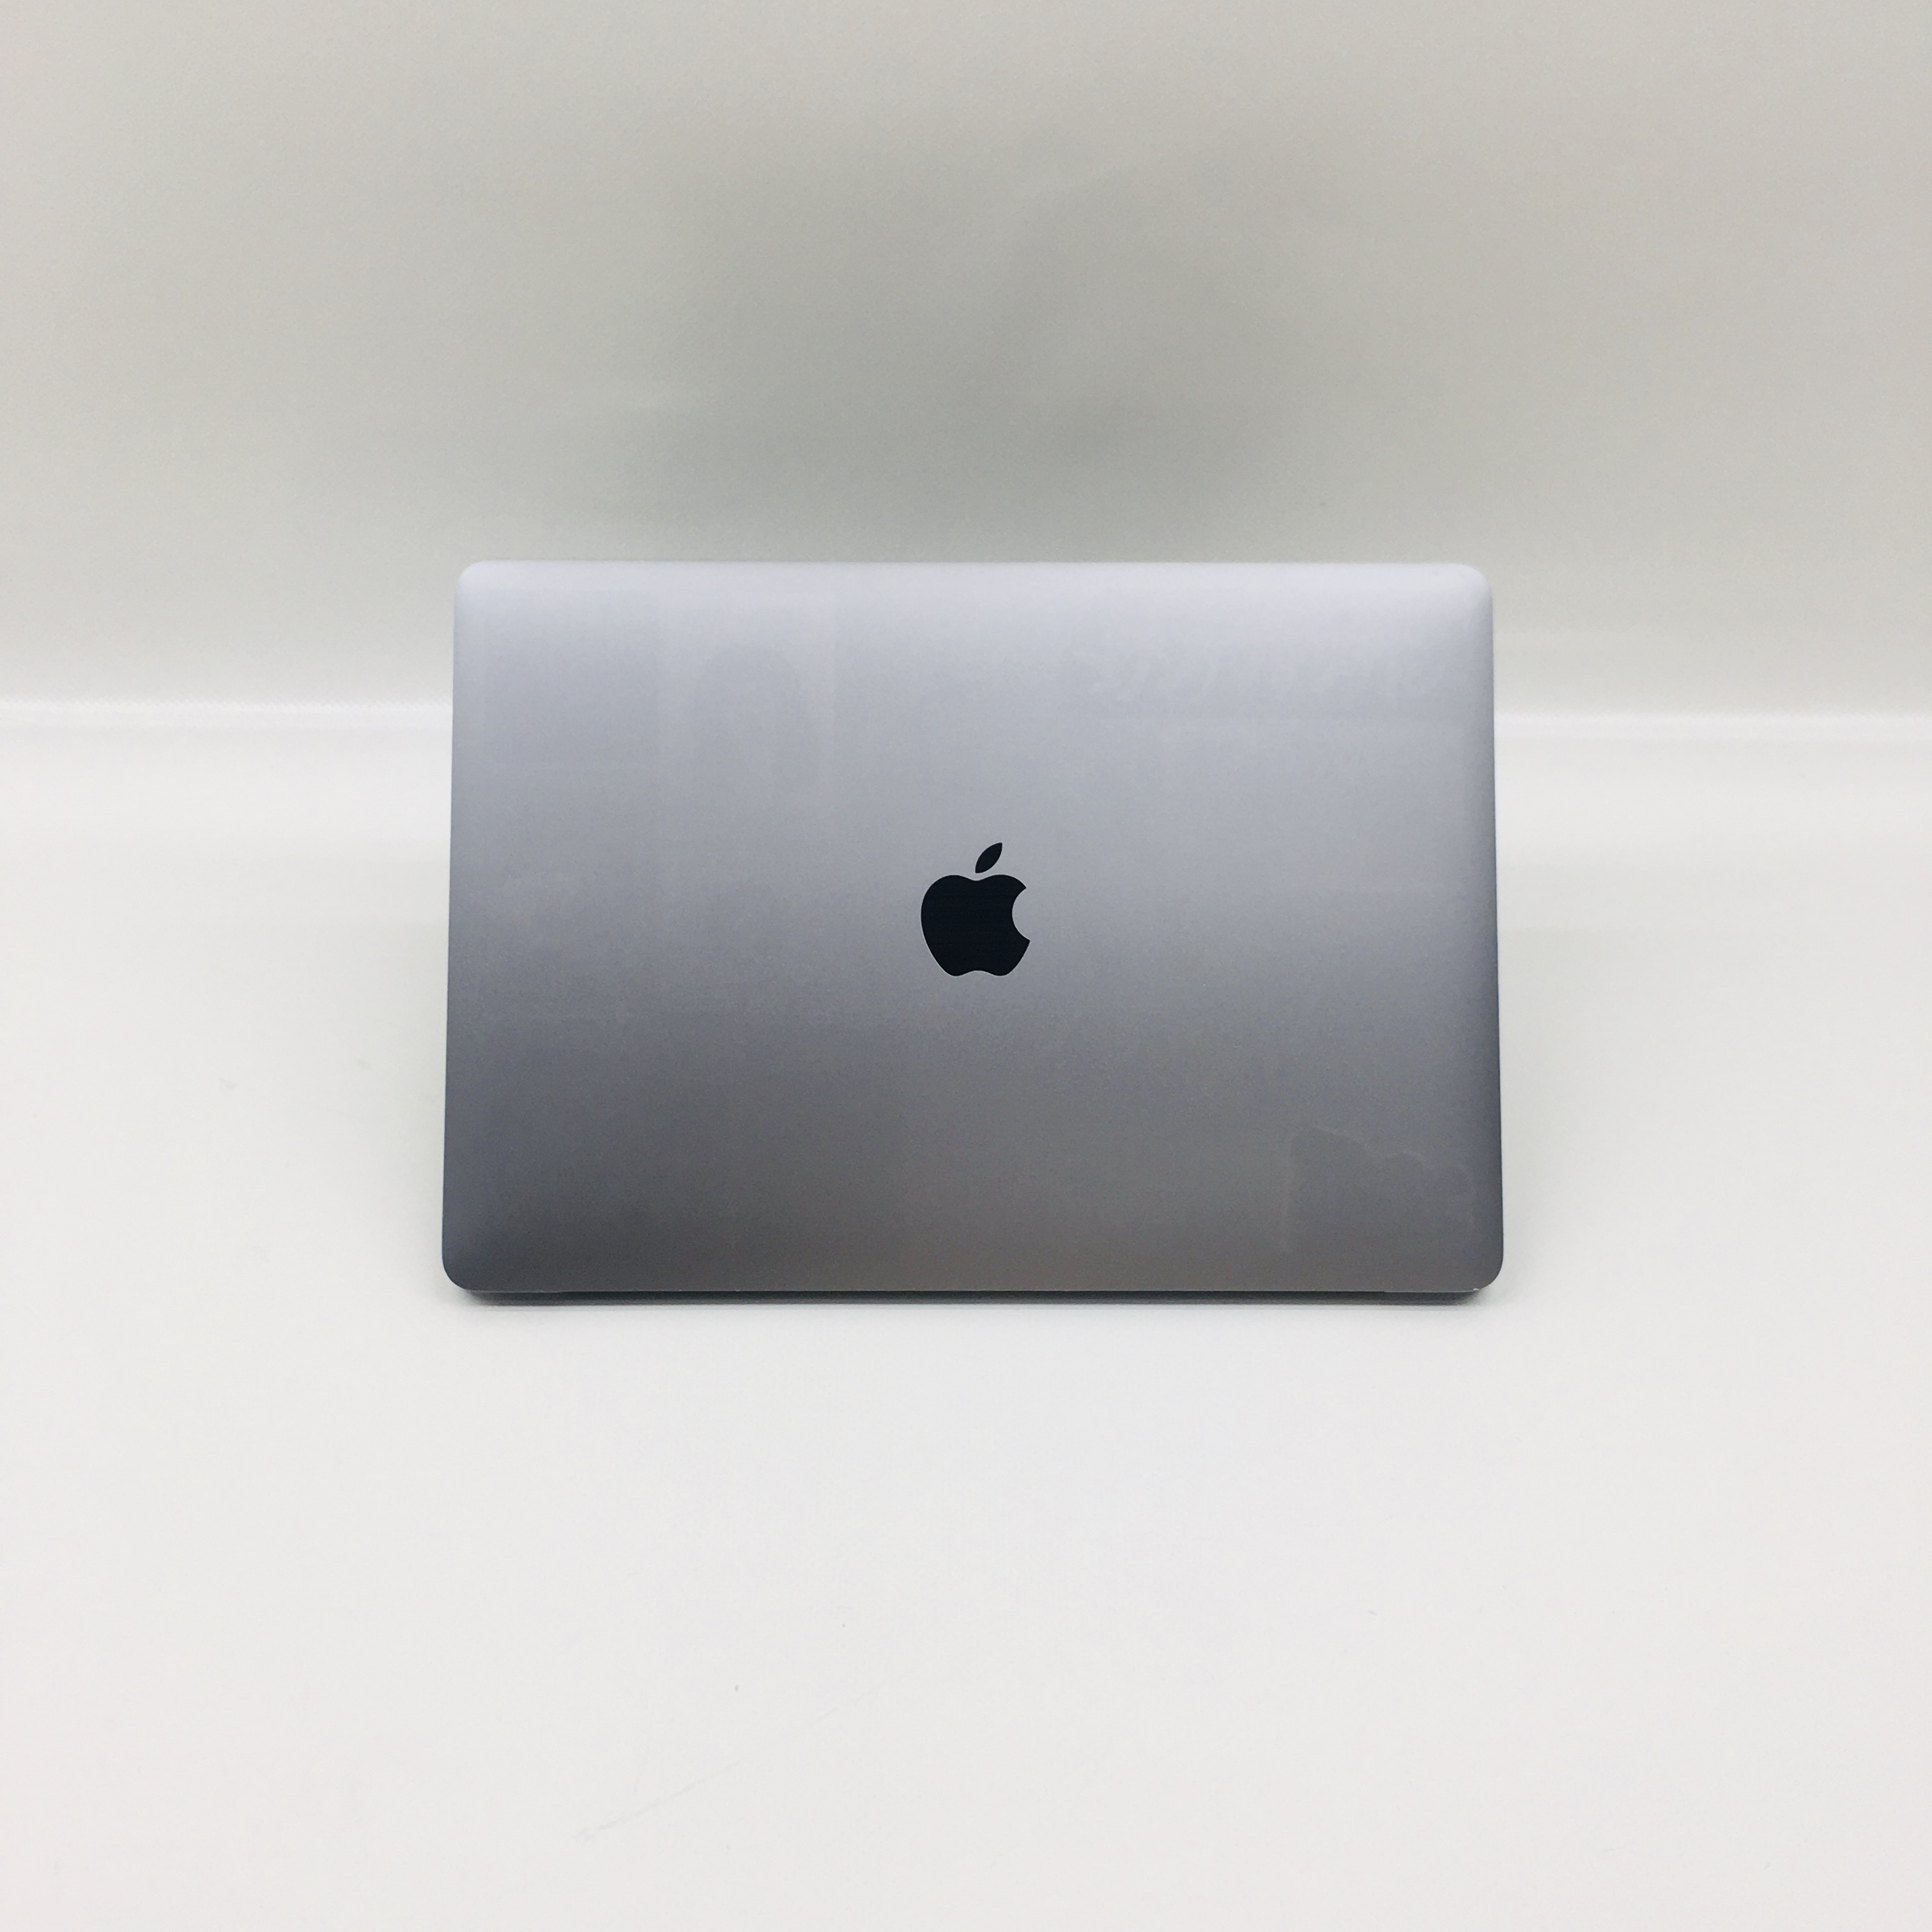 MacBook Pro 13" 2TBT Mid 2017 (Intel Core i5 2.3 GHz 8 GB RAM 256 GB SSD), Space Gray, Intel Core i5 2.3 GHz, 8 GB RAM, 256 GB SSD, image 3